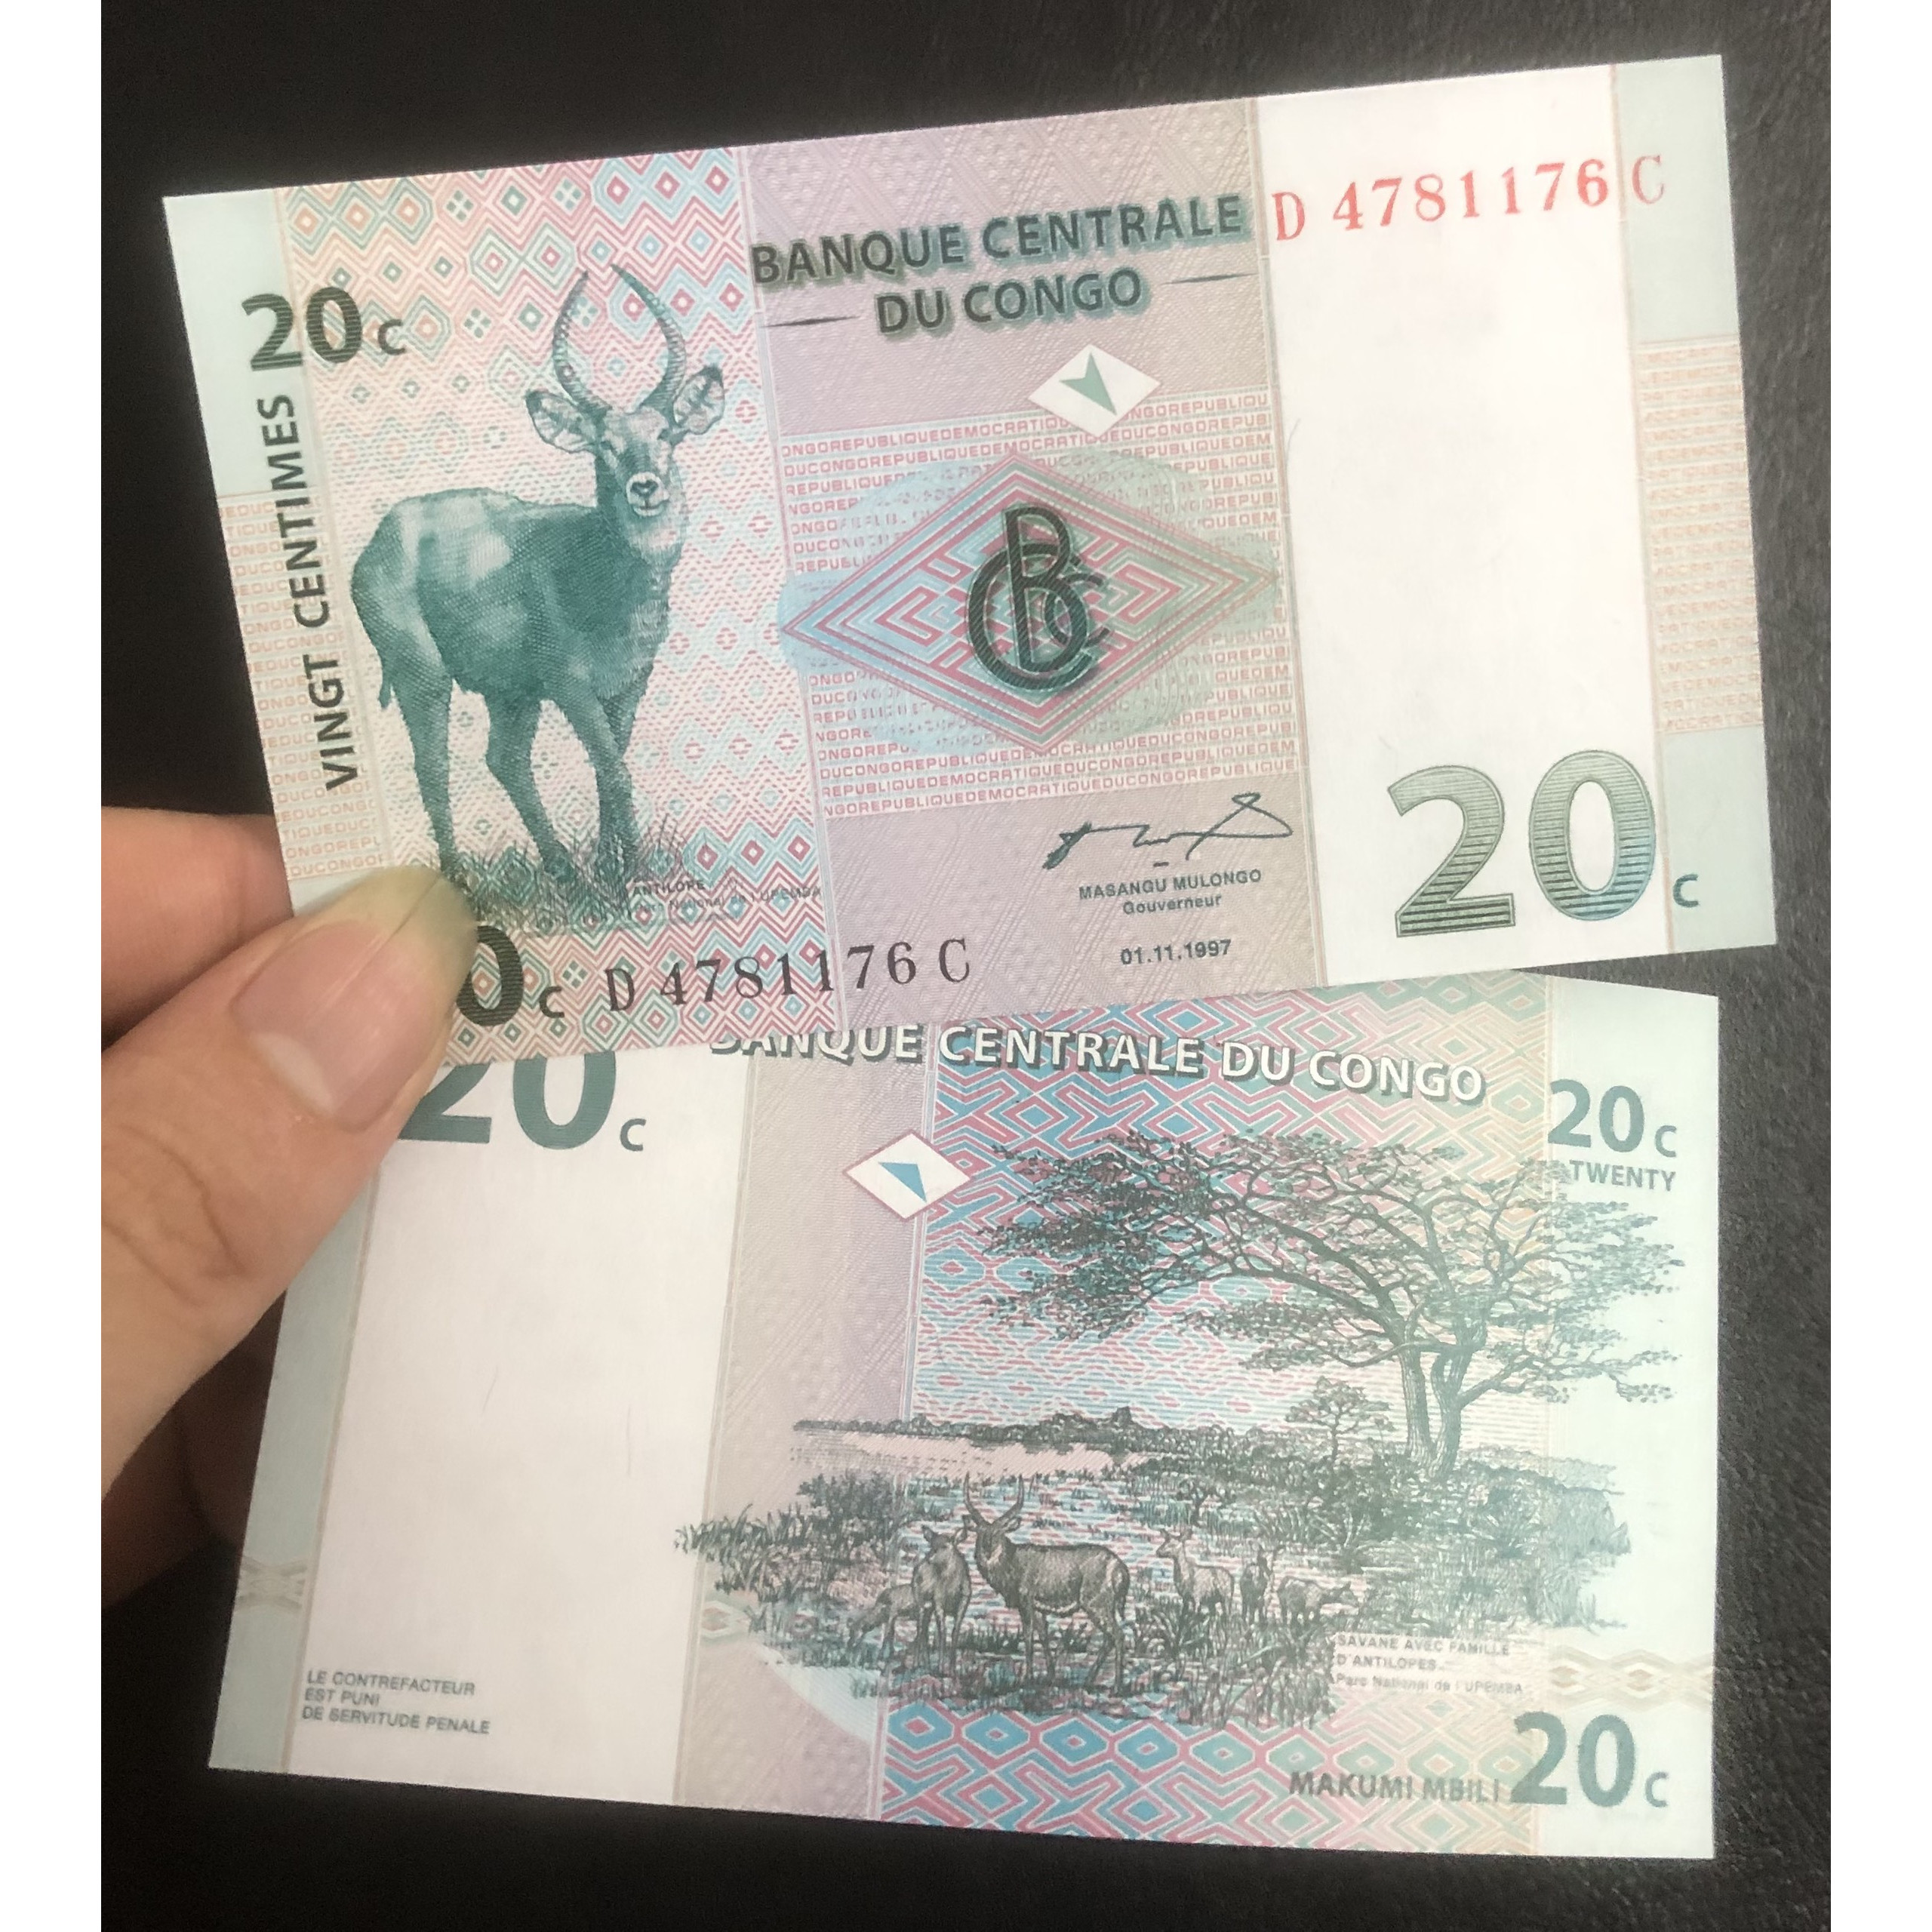 Tờ tiền Congo mệnh giá 20 Francs, mới cứng, tặng kèm bao nilong bảo quản